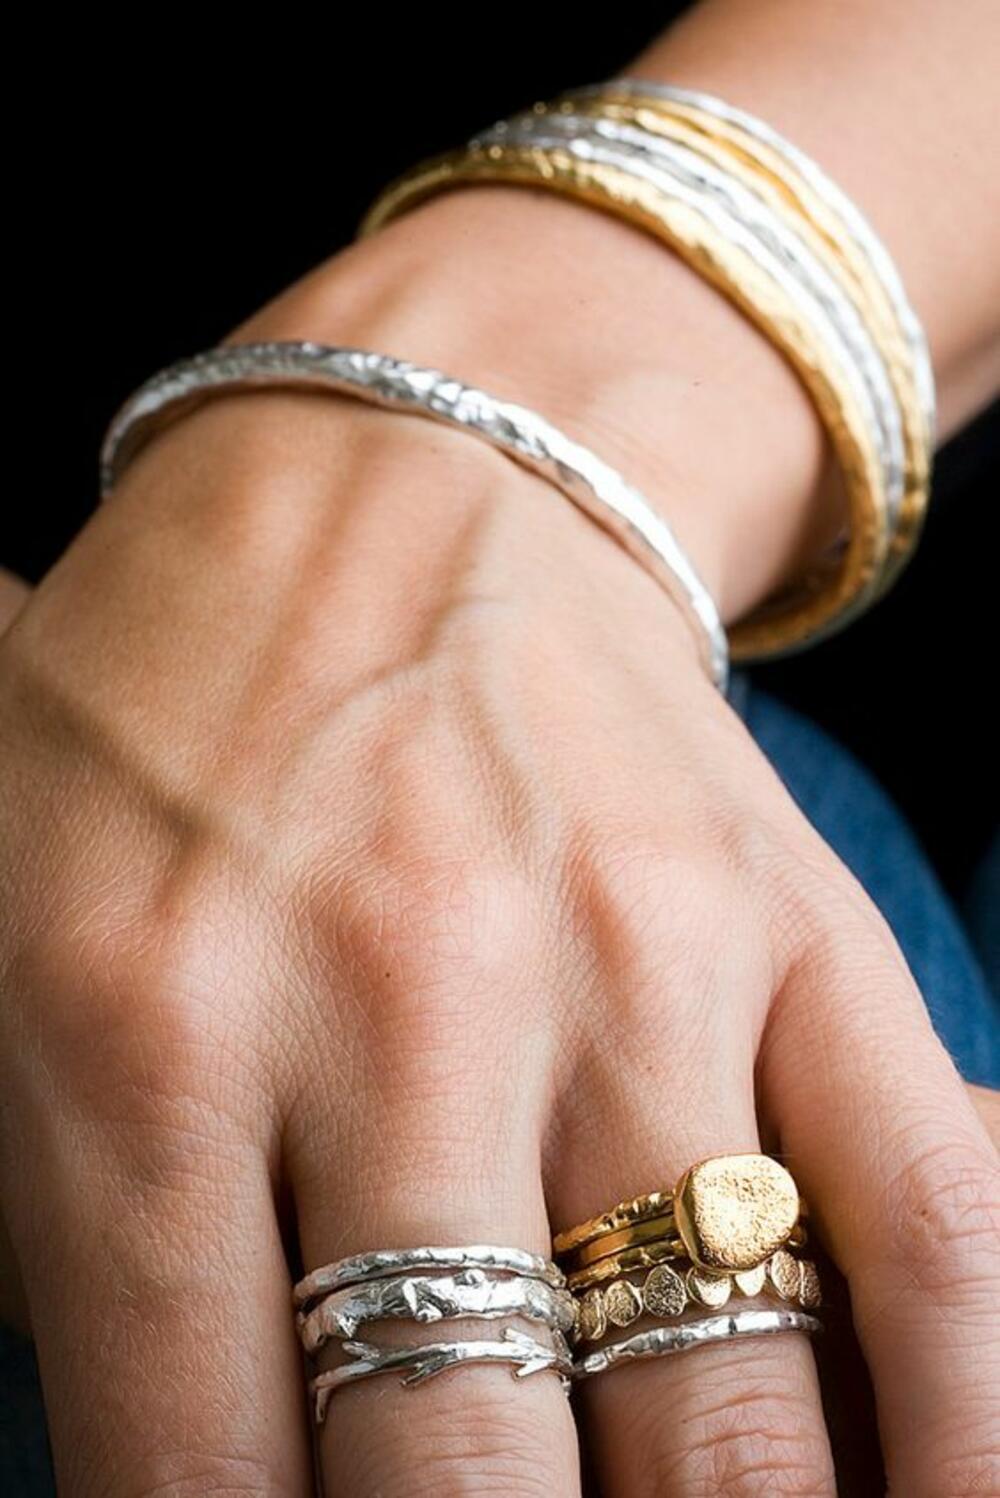 Золото и серебро ком. Сочетание золота и серебра. Кольцо на руке. Золотые и серебряные кольца на одной руке. Стильные ювелирные украшения из золота.